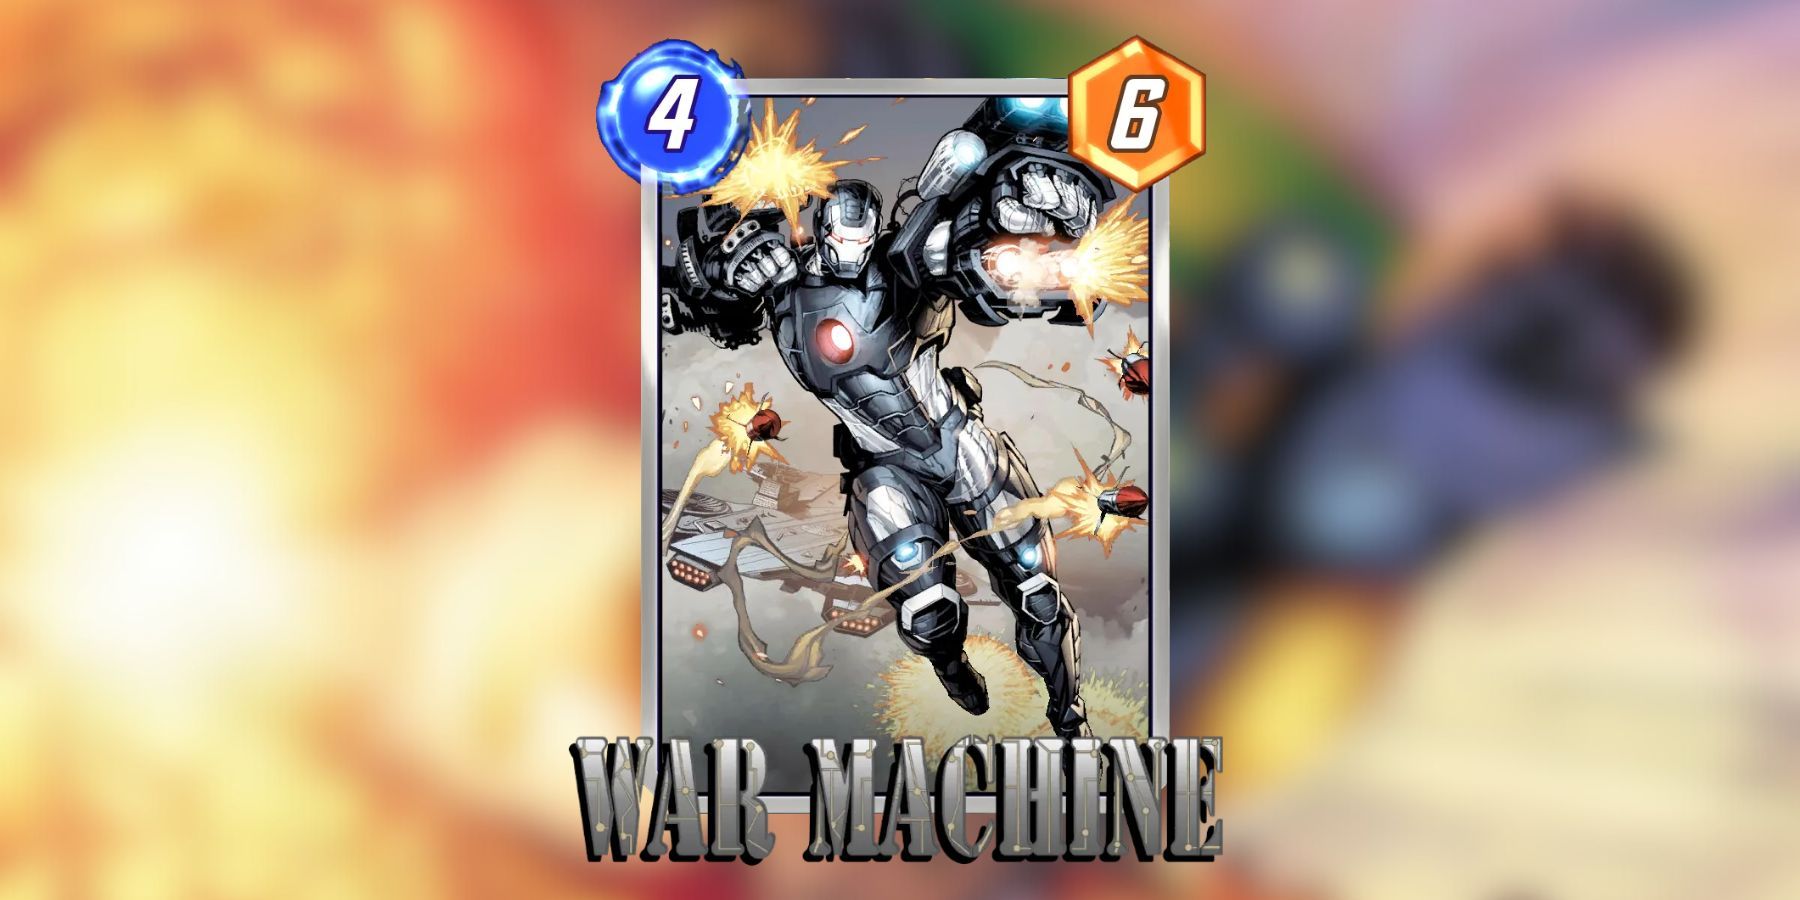 war machine variant in marvel snap.